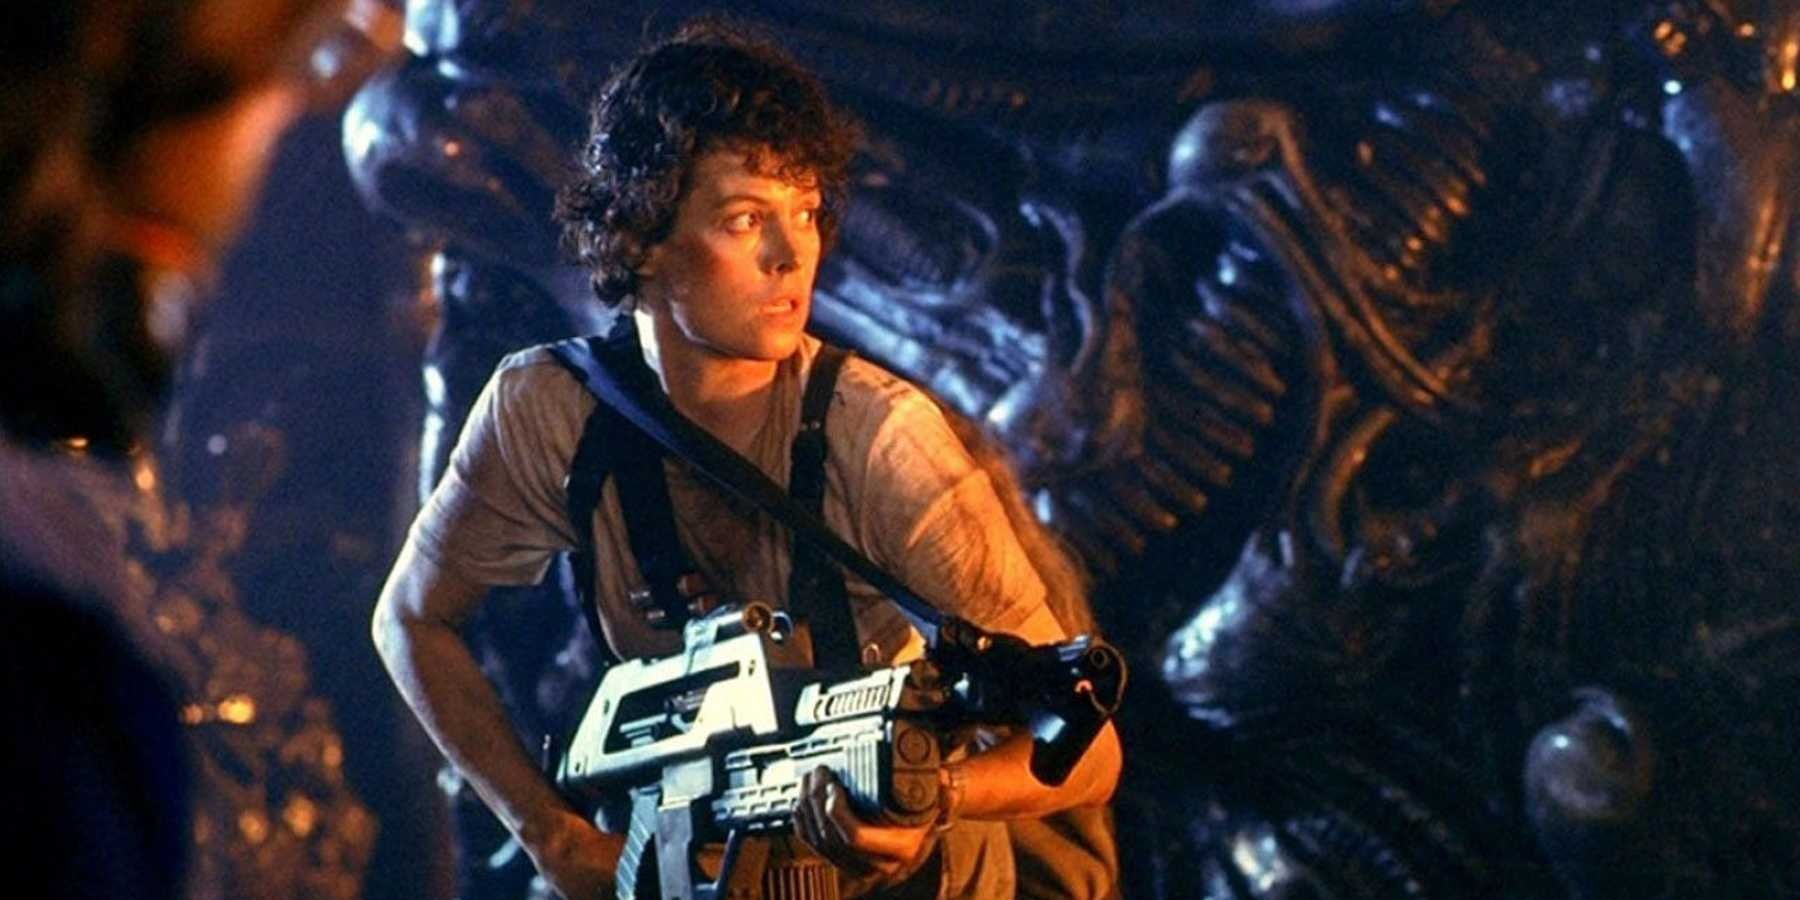 A picture of Ellen Ripley in Aliens is shown.